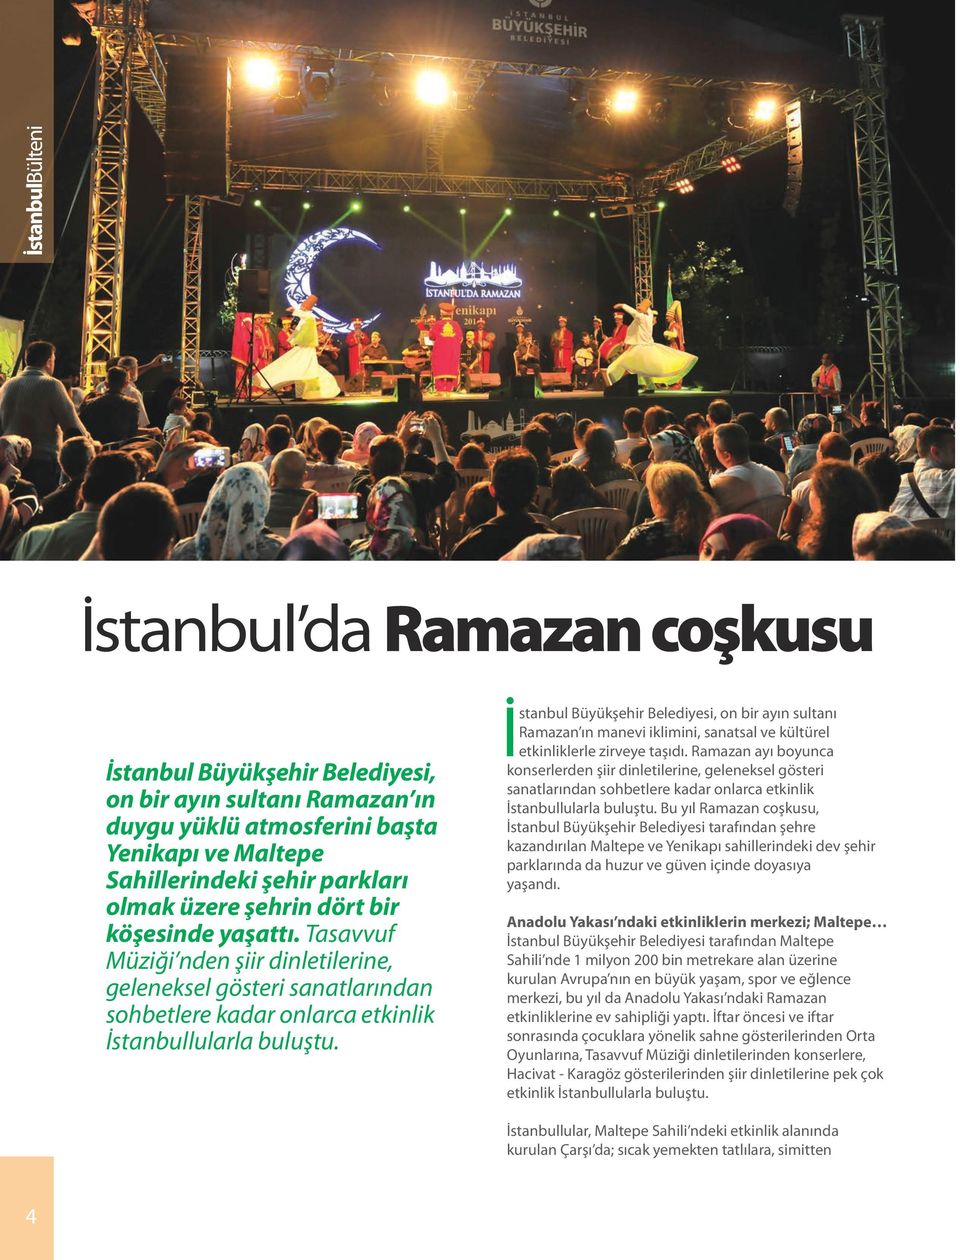 İstanbul Büyükşehir Belediyesi, on bir ayın sultanı Ramazan ın manevi iklimini, sanatsal ve kültürel etkinliklerle zirveye taşıdı.